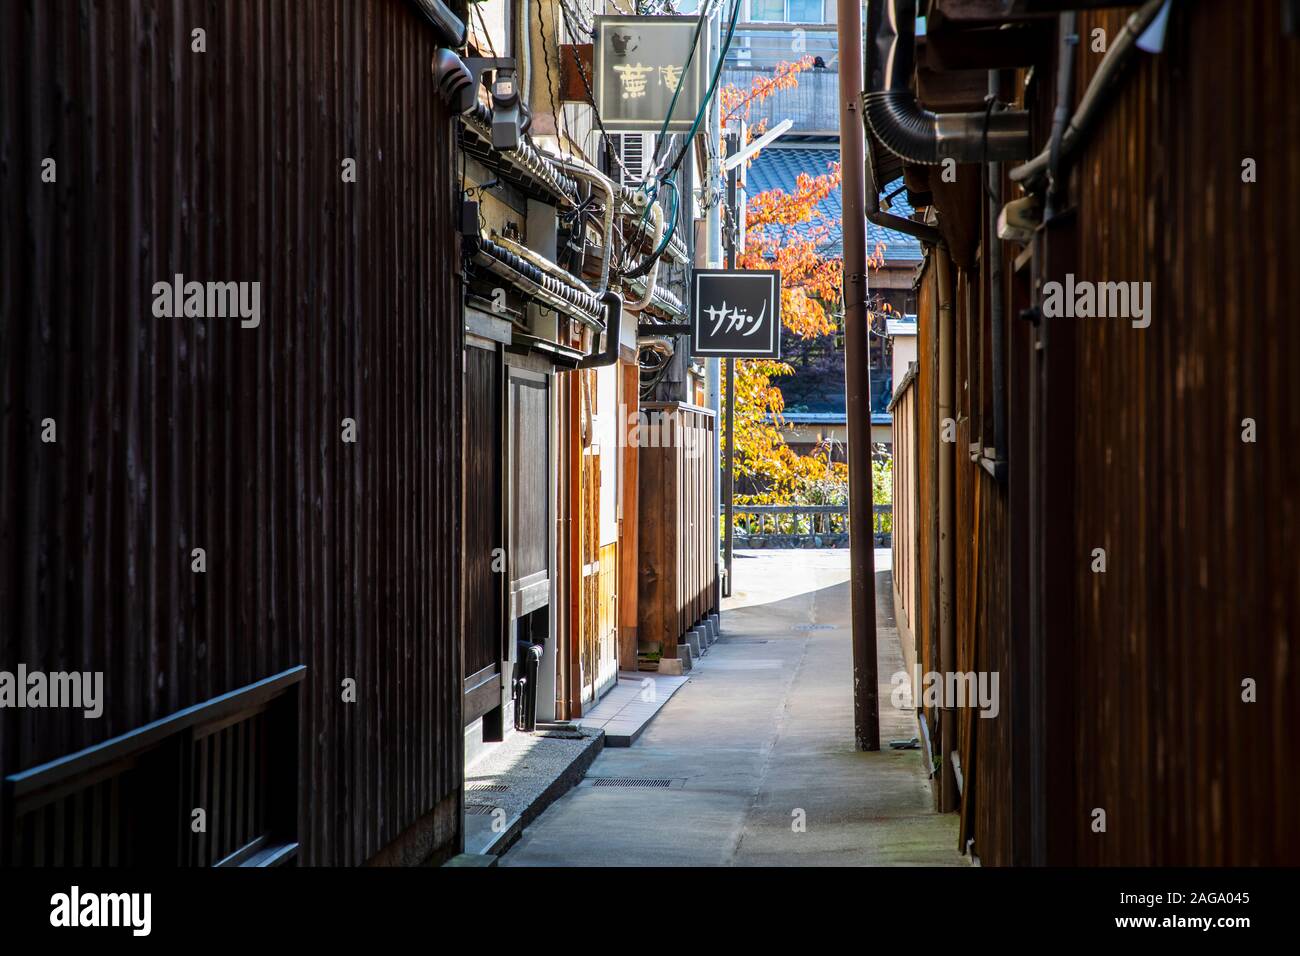 KYOTO, Japan - 19. November 2019: Gion ist die berühmteste Geisha Bezirk mit hoher Konzentration von traditionellen Holz- mechant Häuser. Stockfoto